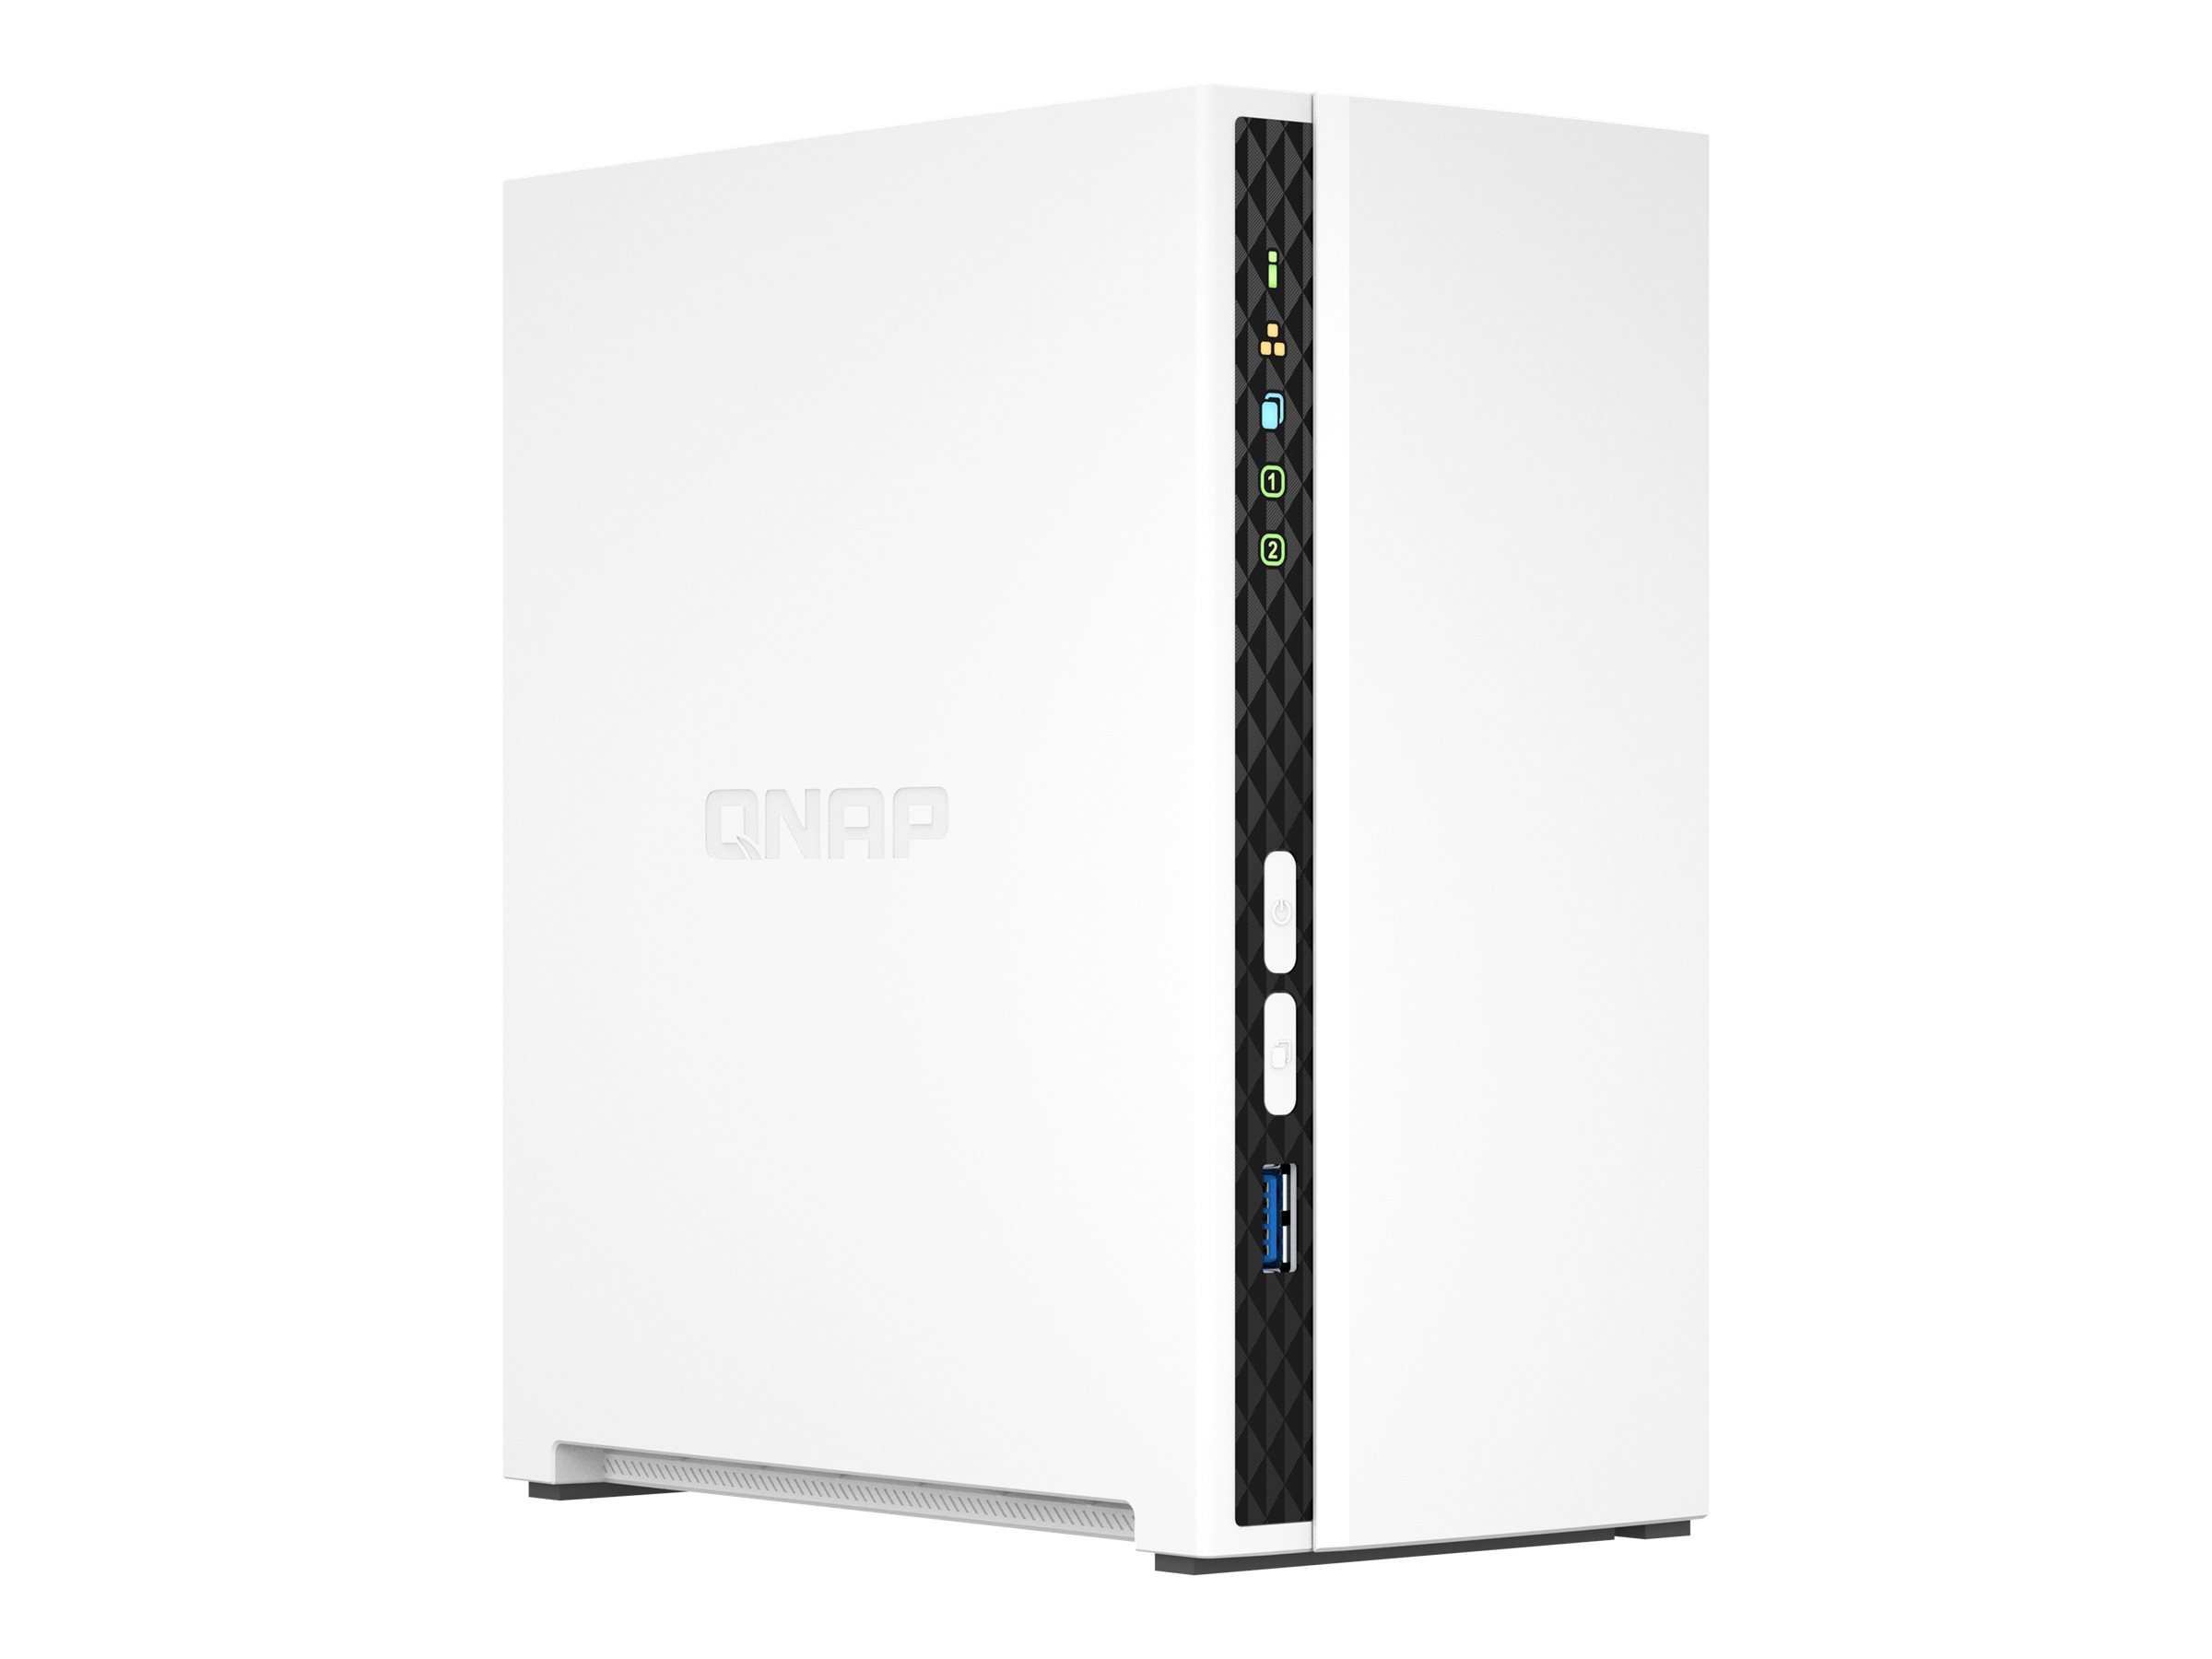 QNAP NAS Qnap TS-233 0/2HDD Tower